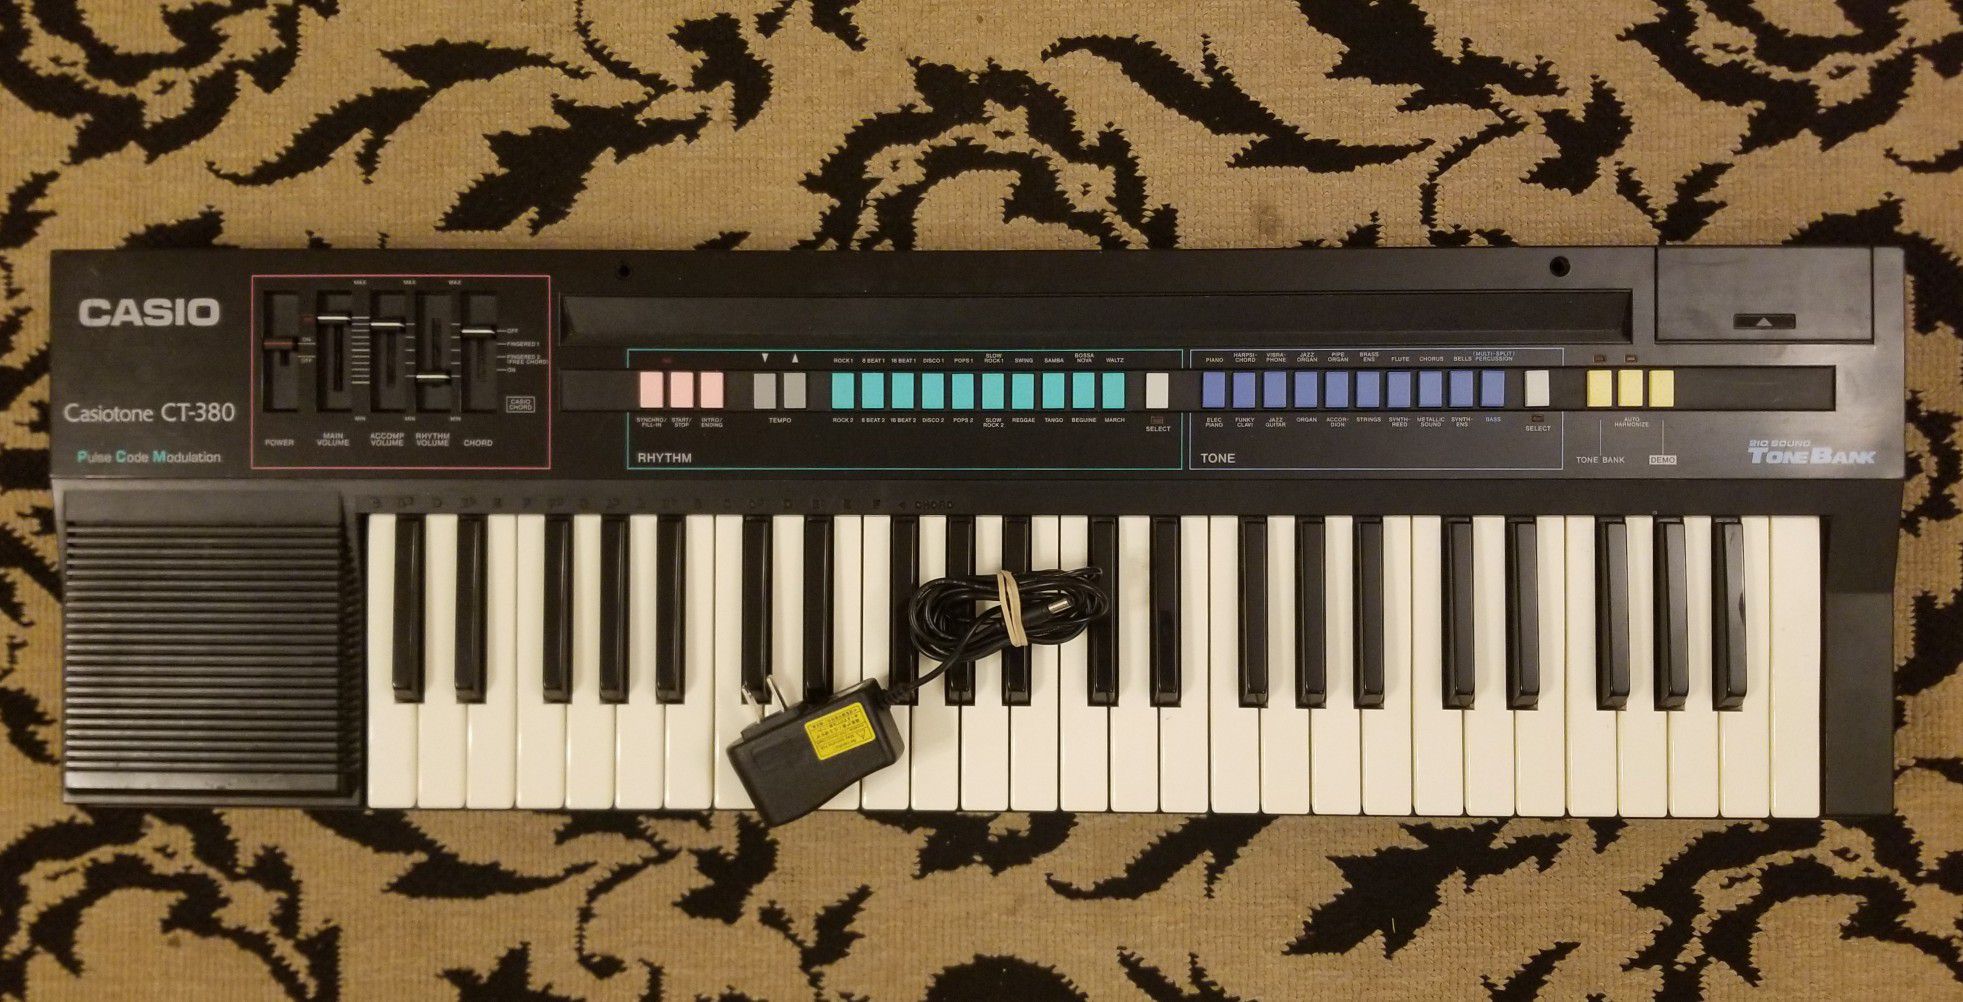 Casio CT-380 Keyboard